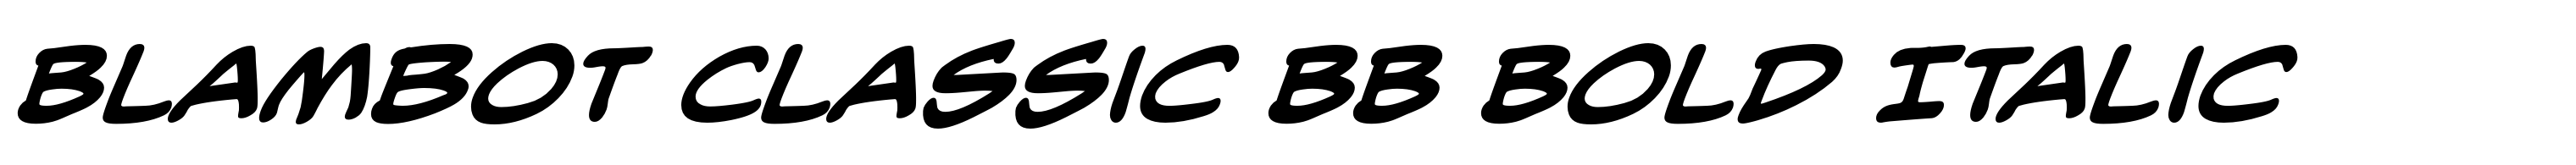 Blambot Classic BB Bold Italic